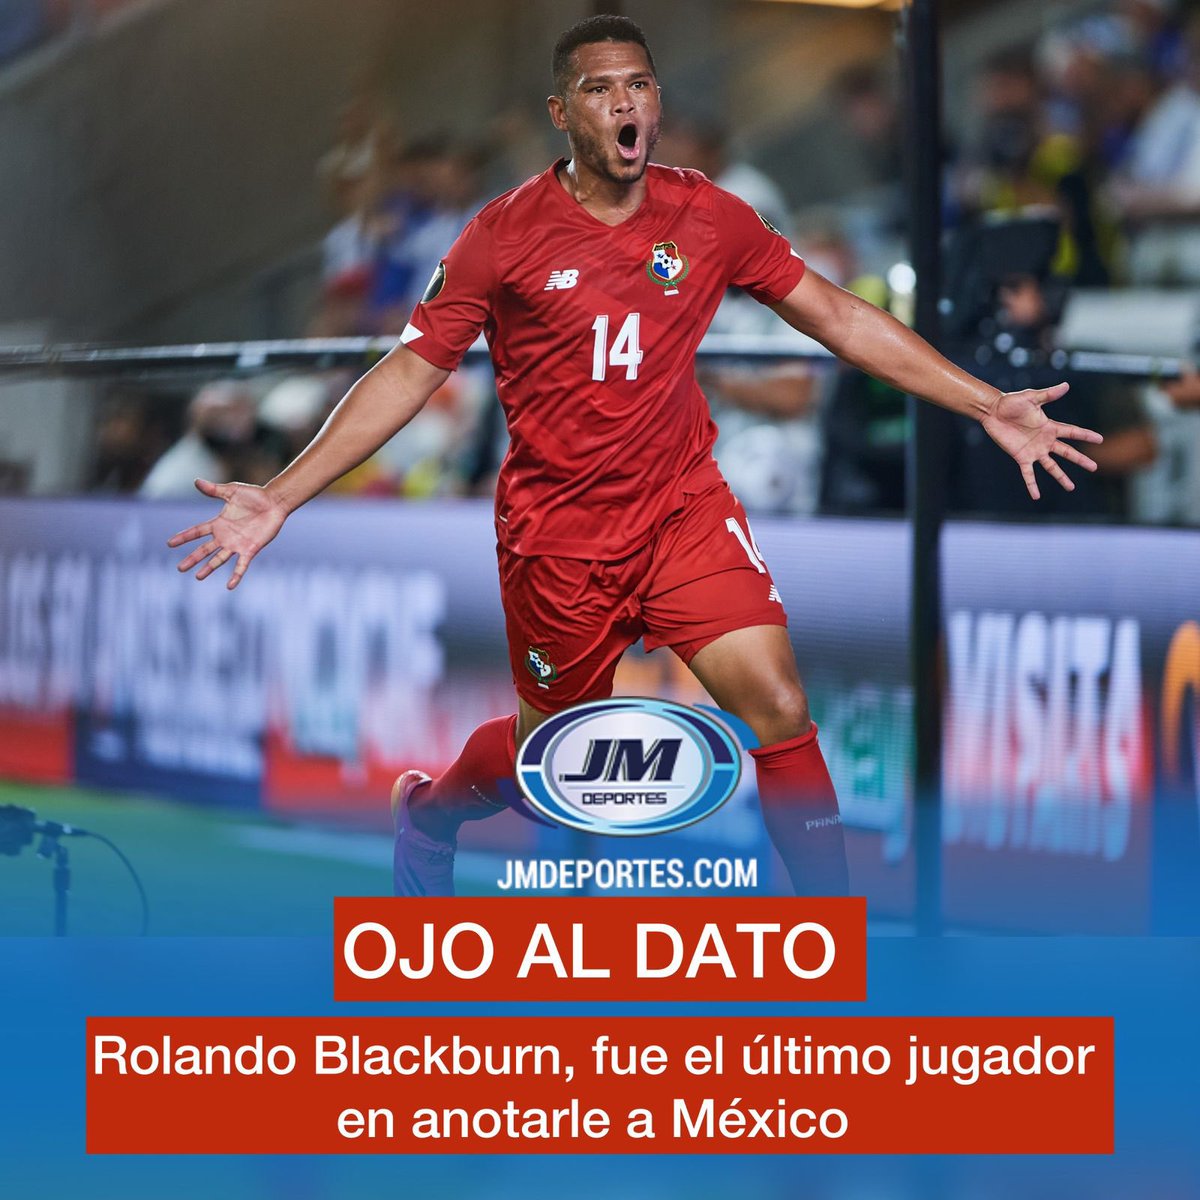 ¡EL ÚLTIMO GOLEADOR!😳⚽️🇵🇦 Rolando Blackburn fue el autor del último gol anotado en los últimos 4 partidos entre Panamá y México en el empate 1-1, el 8 de septiembre del 2021 por la clasificación al Mundial de Qatar. #JMDeportes #Panamá #México